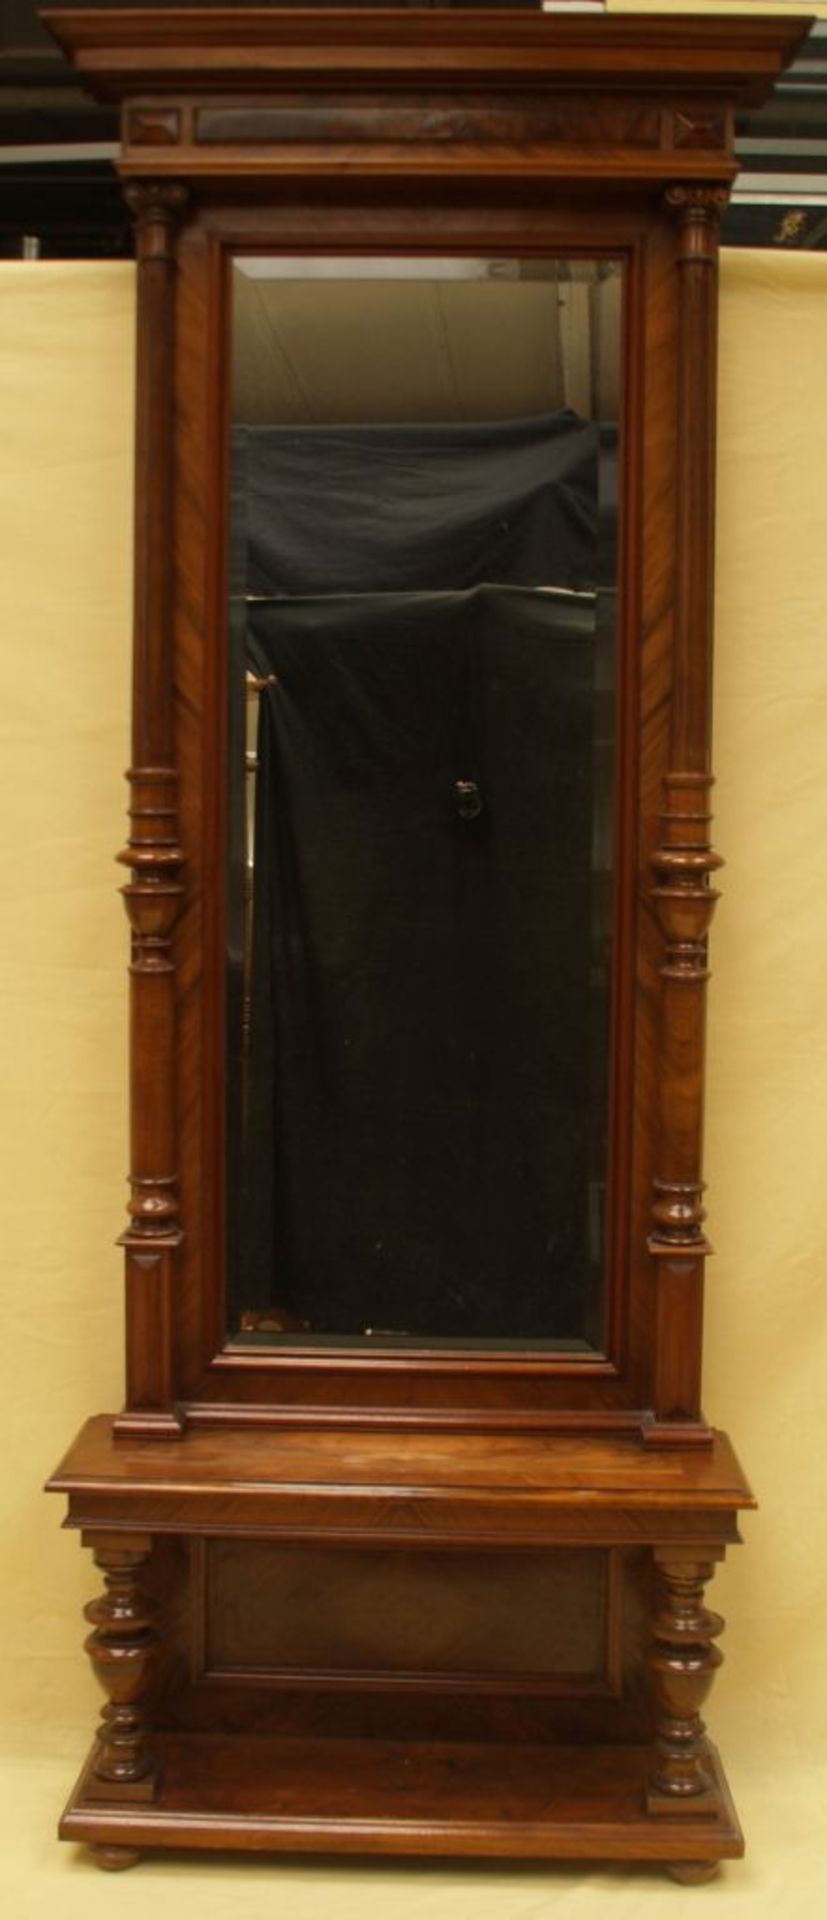 Rustikaler Trumeau-Spiegel auf Konsole - Ende 19.Jh.,Nussbaum,kannelierte Vollsäulen,Spiegel mit